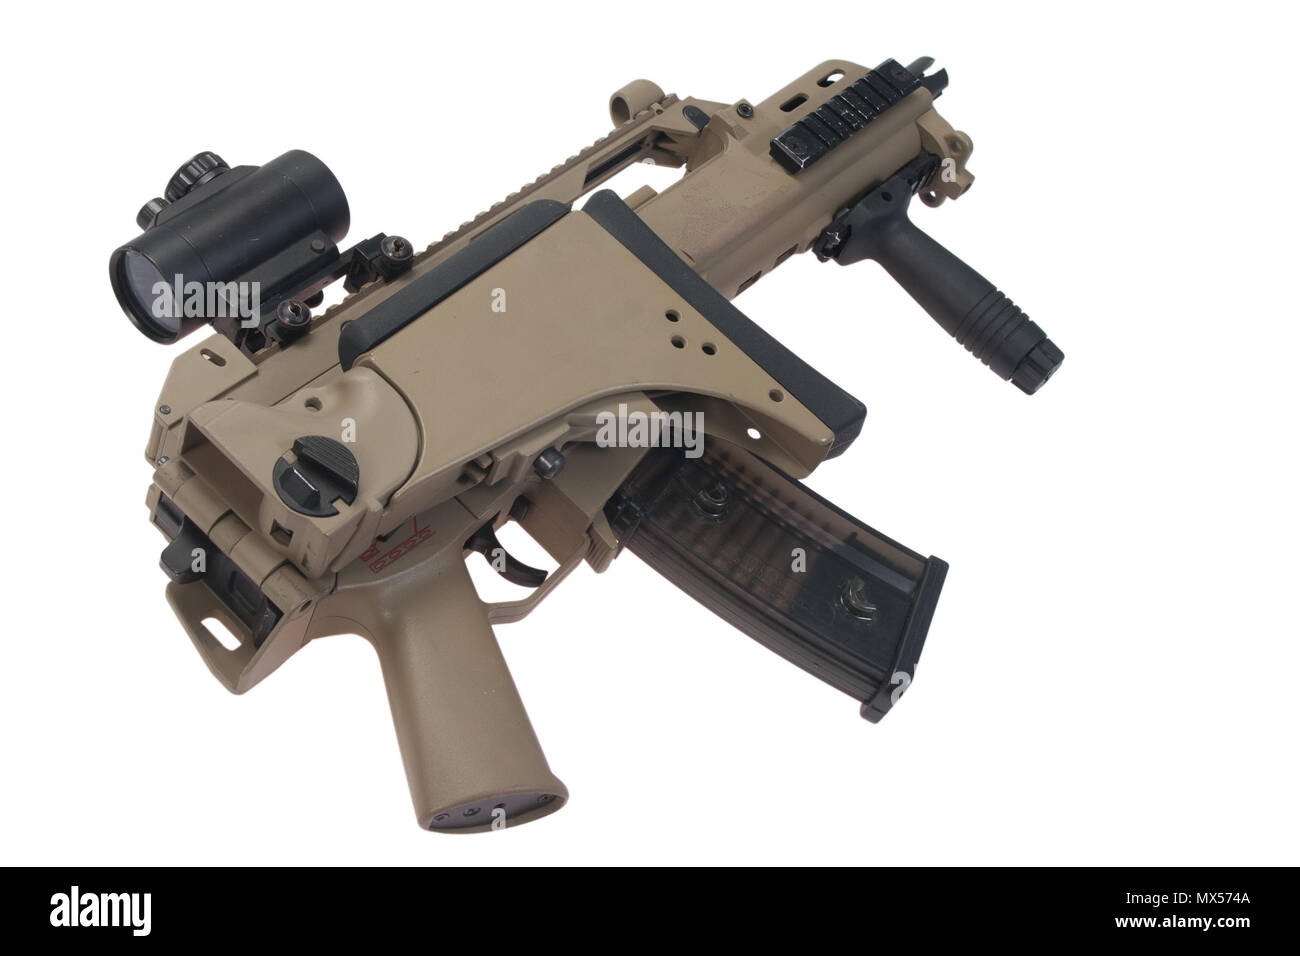 bundeswehr assault rifle G36 isolated on white background Stock Photo